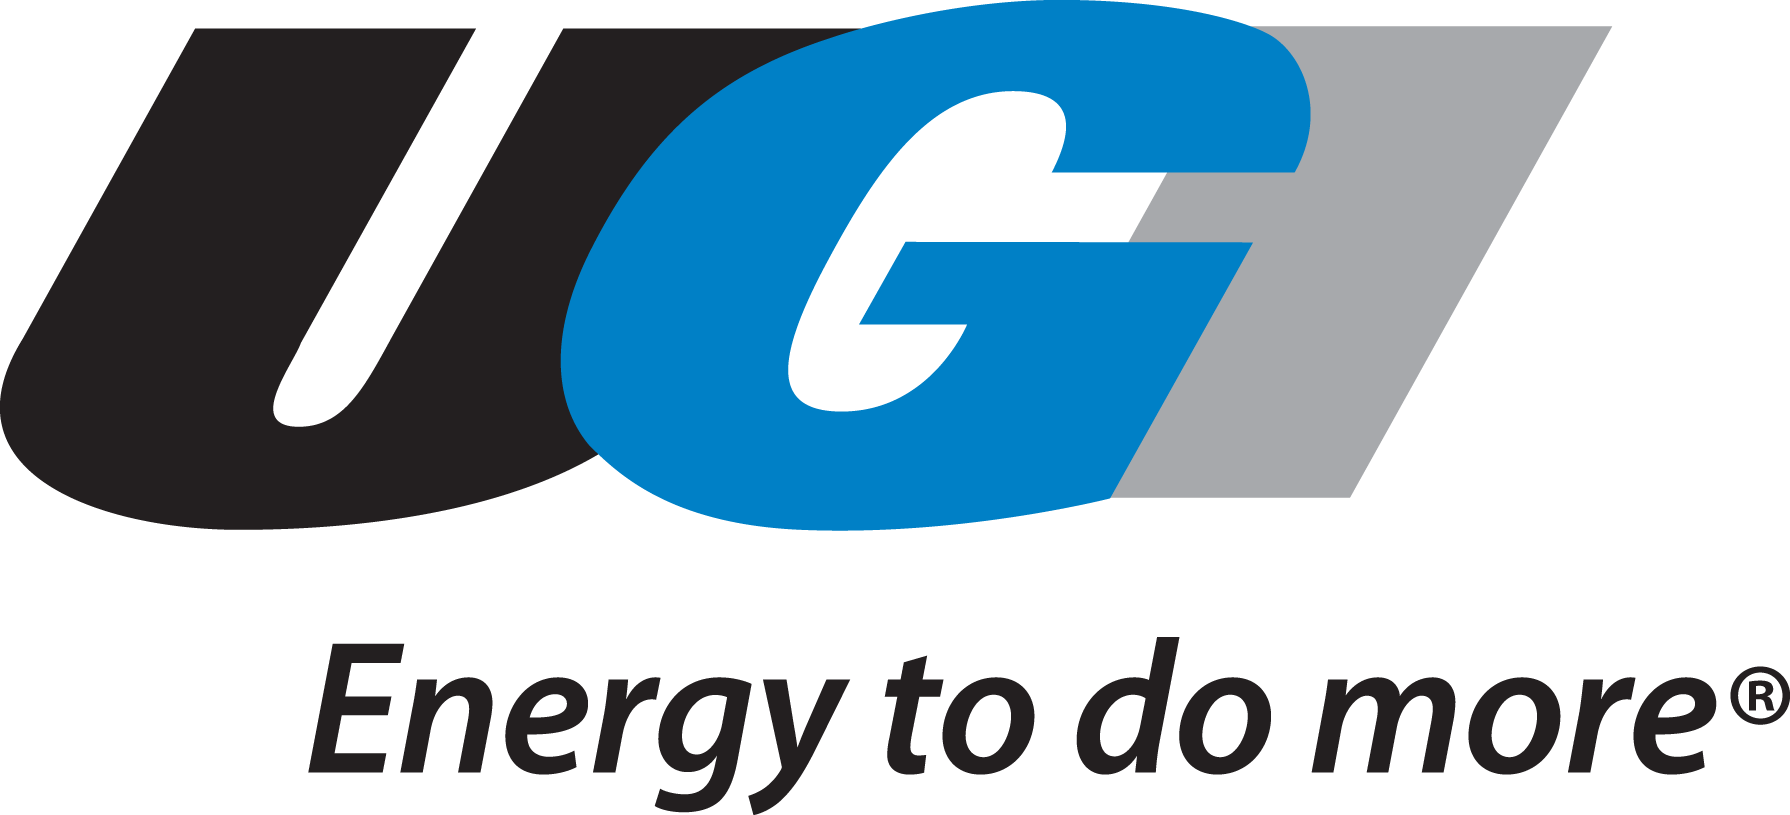 UGI | Energy to do more